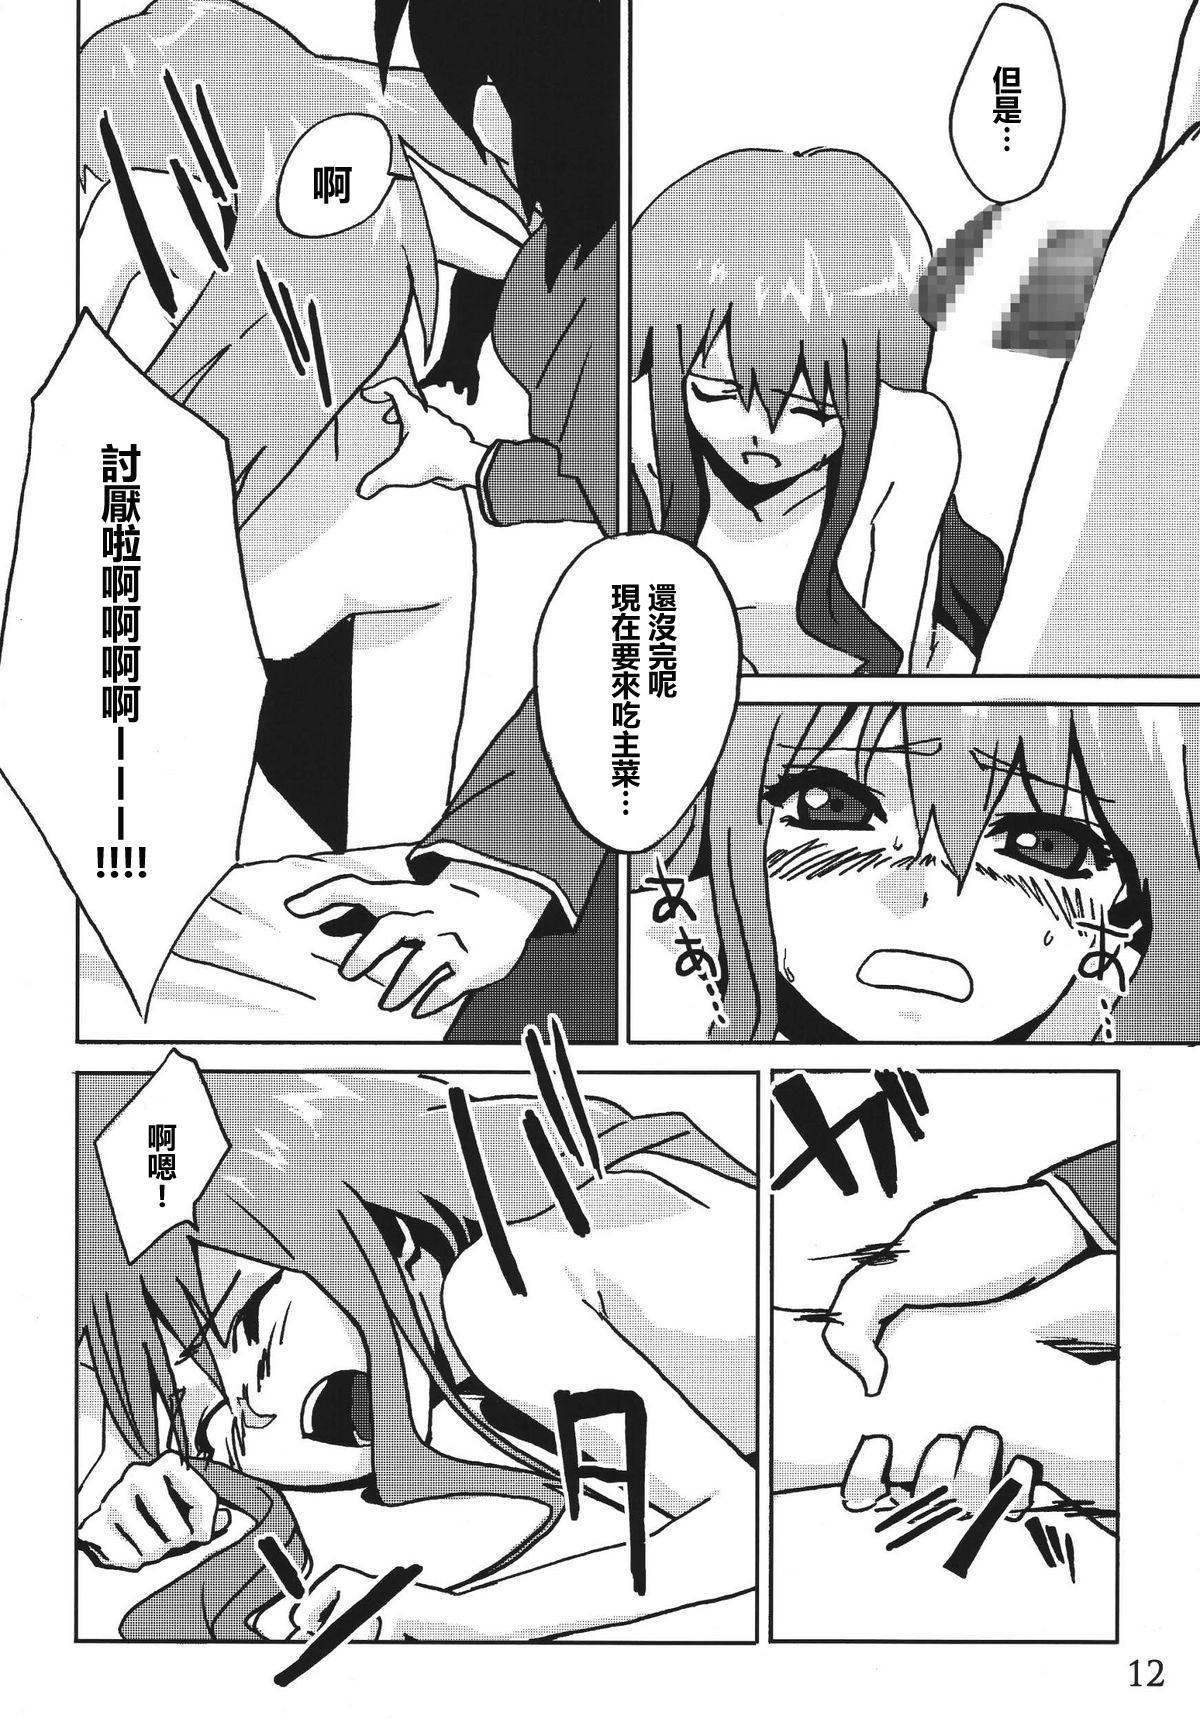 Hot Fucking Mage no Kimochi - Zero no tsukaima Nude - Page 10